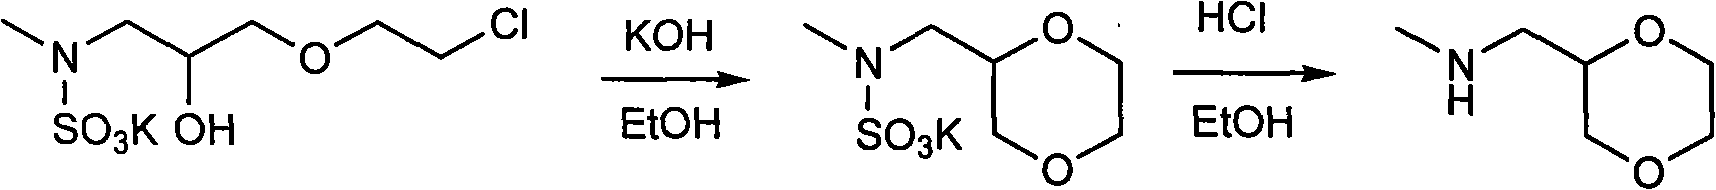 Synthesis process of (2R)-(1,4-dioxane-2-yl)-N-methyl-methanamine hydrochloride